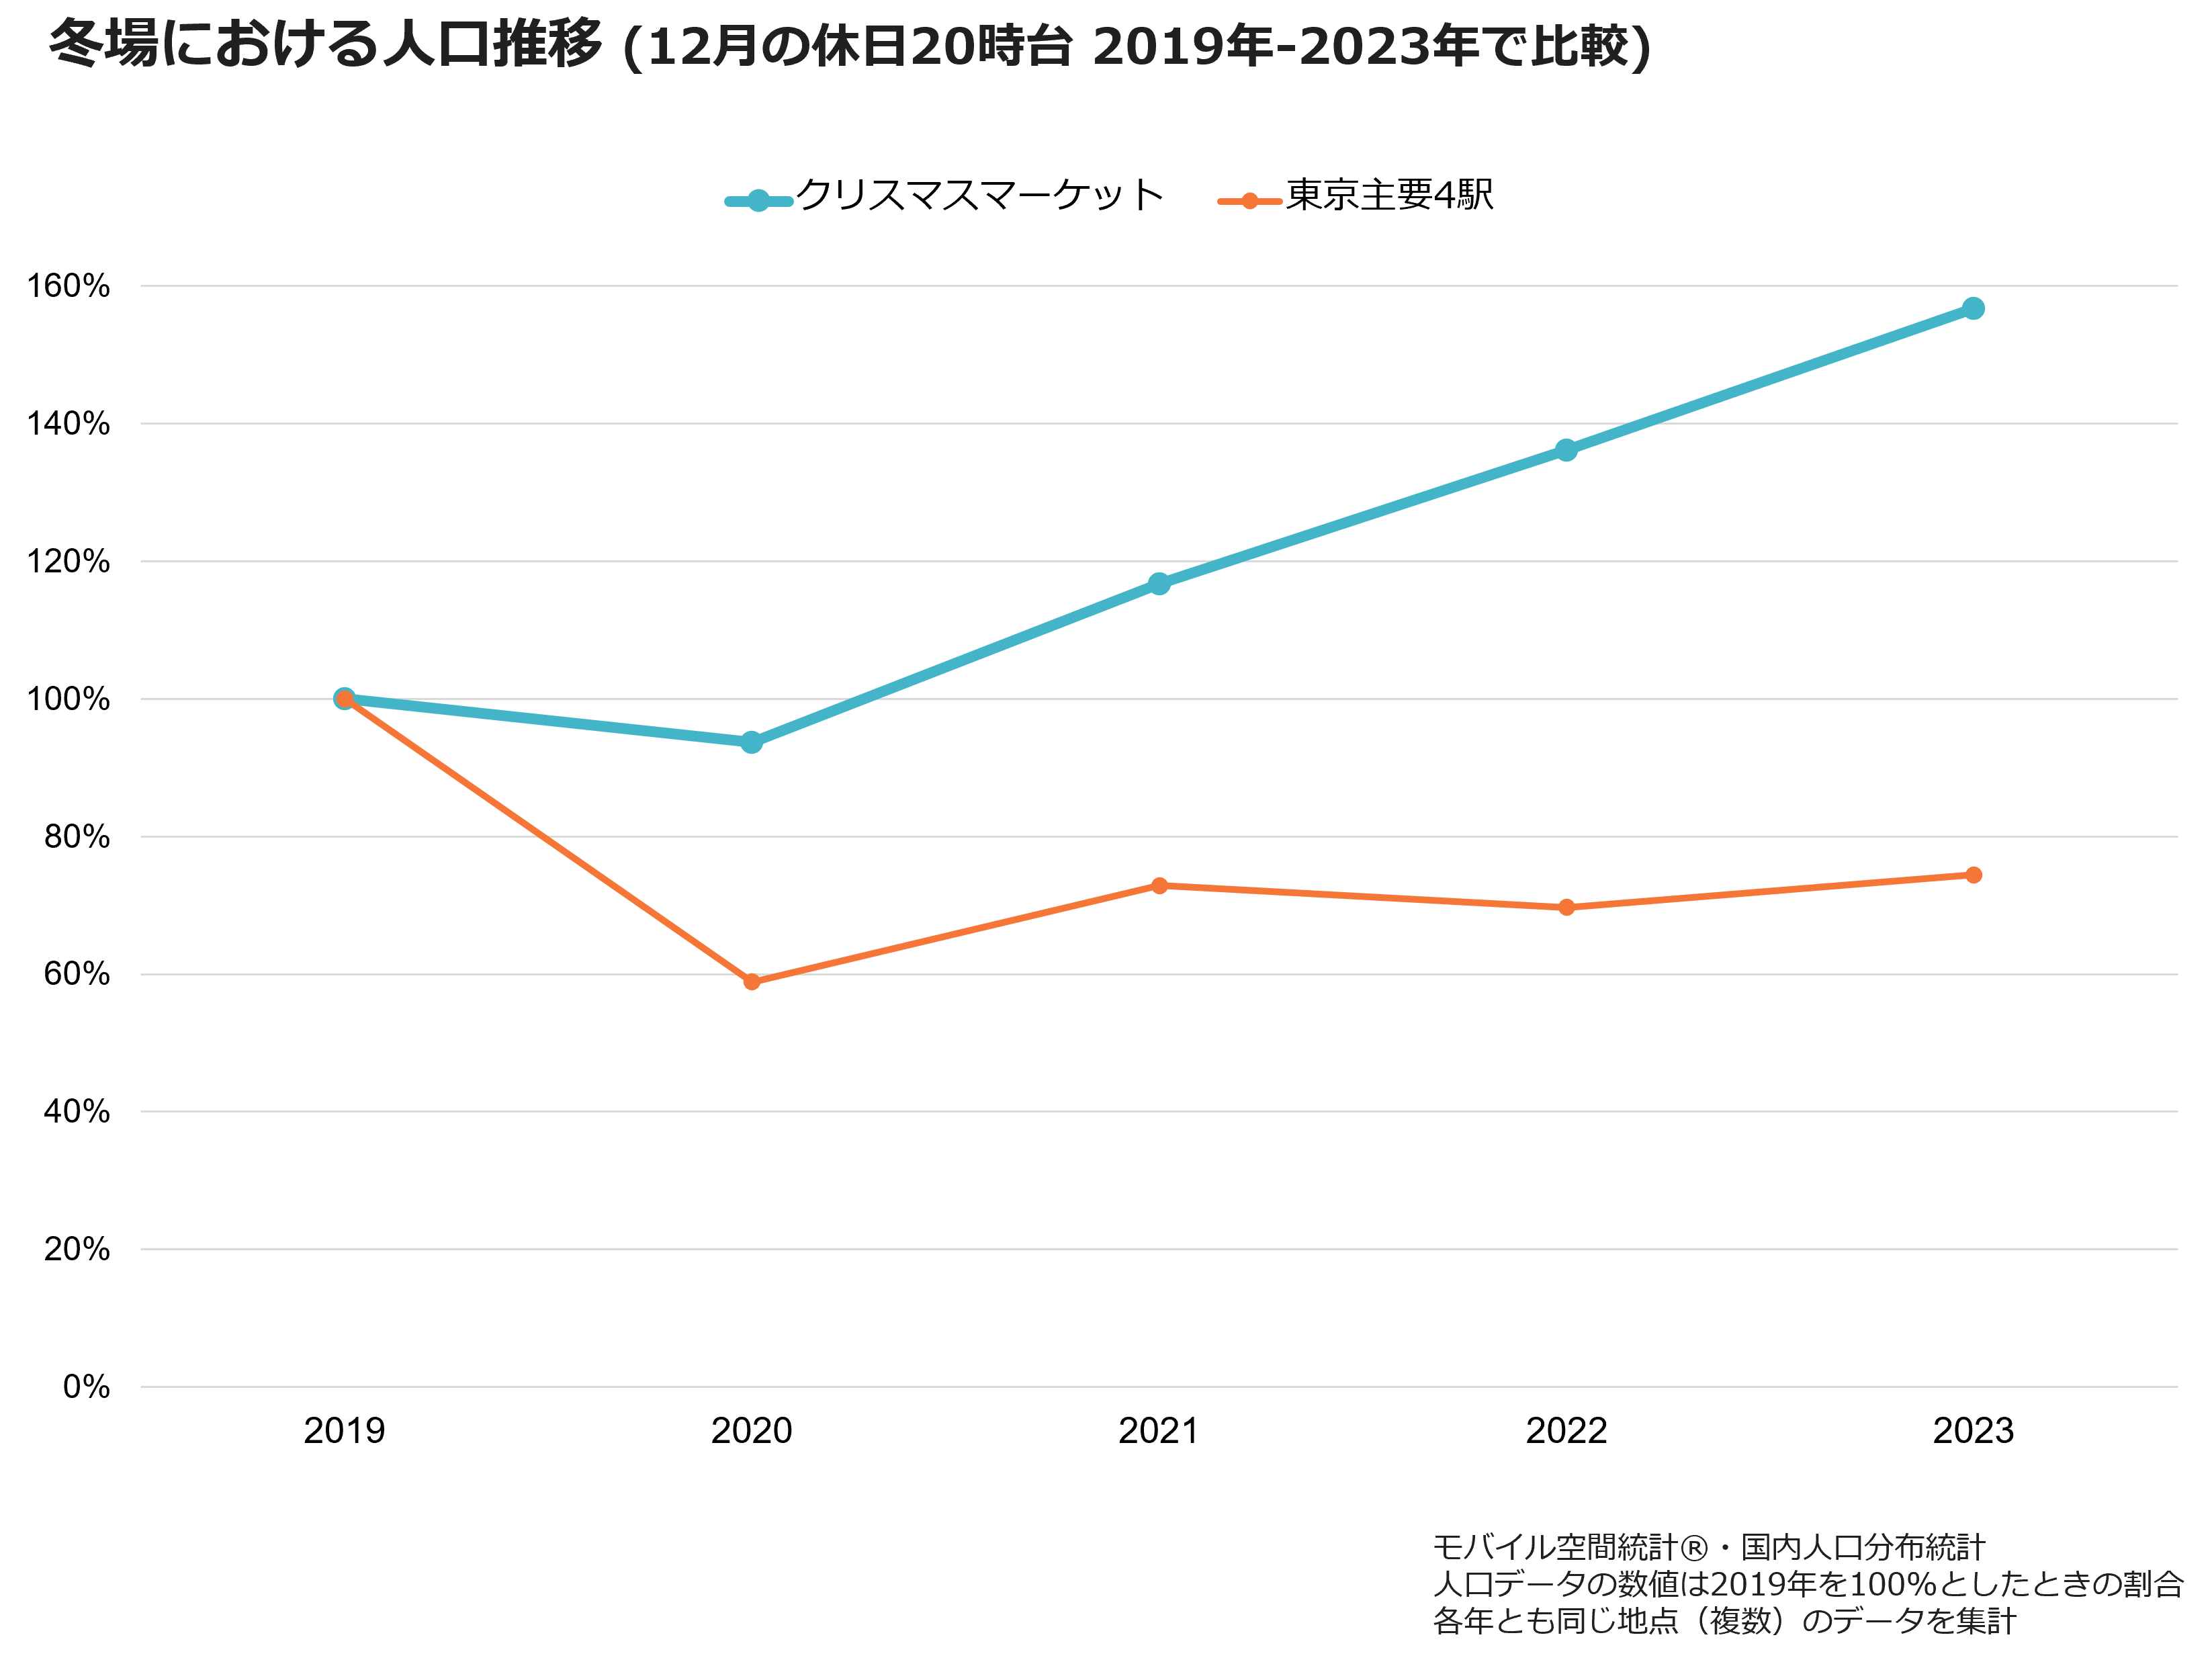 冬場における人口推移（12月の休日20時台 2019年-2023年で比較）